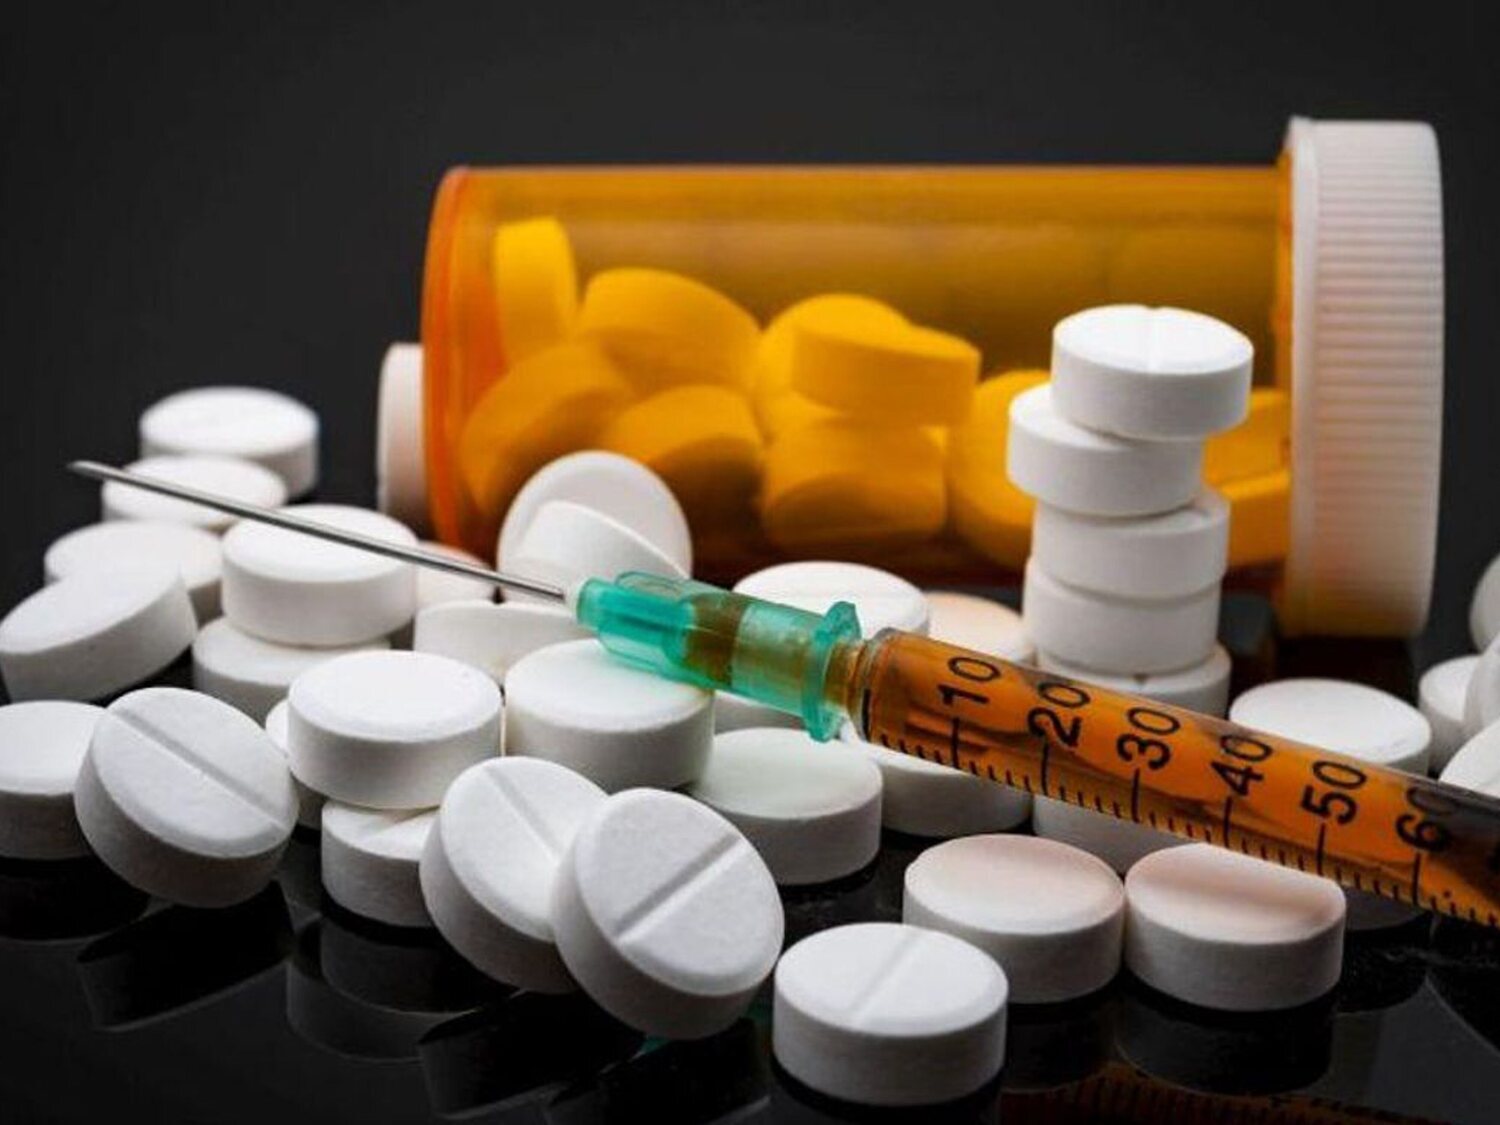 Estados Unidos acusa a China de introducir millones de dosis de fentanilo en el país